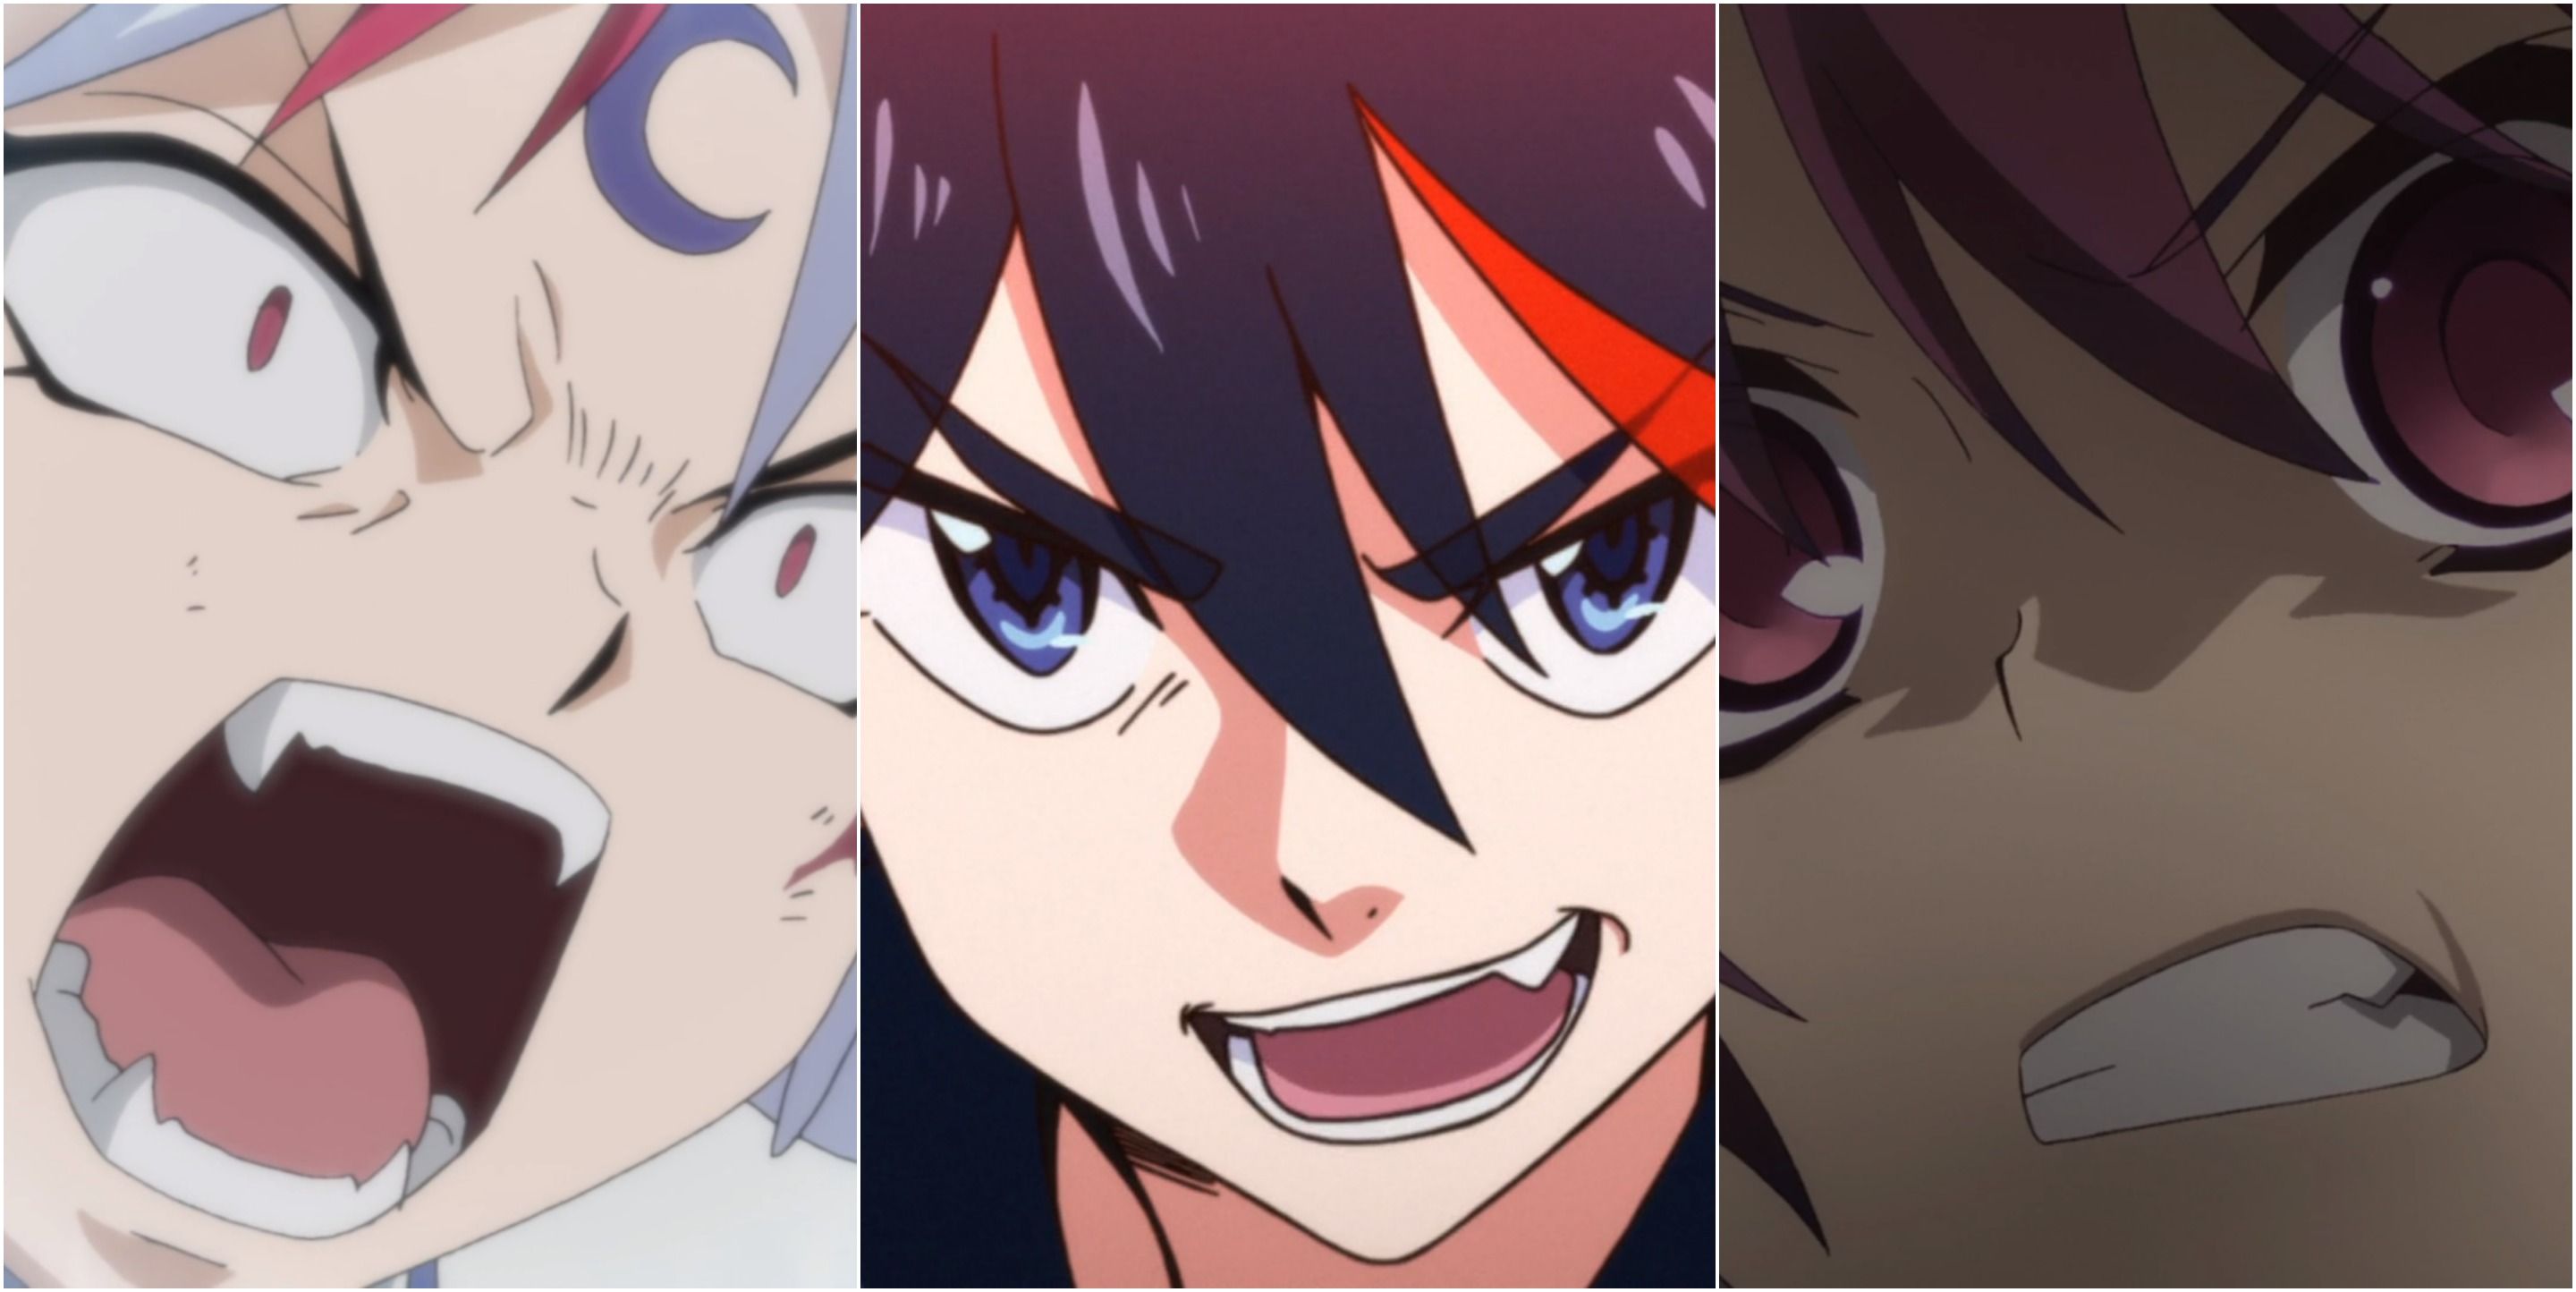 Towa from Yasahime, Ryuko from Kill La Kill, and Bazett from Fate/Kaleid